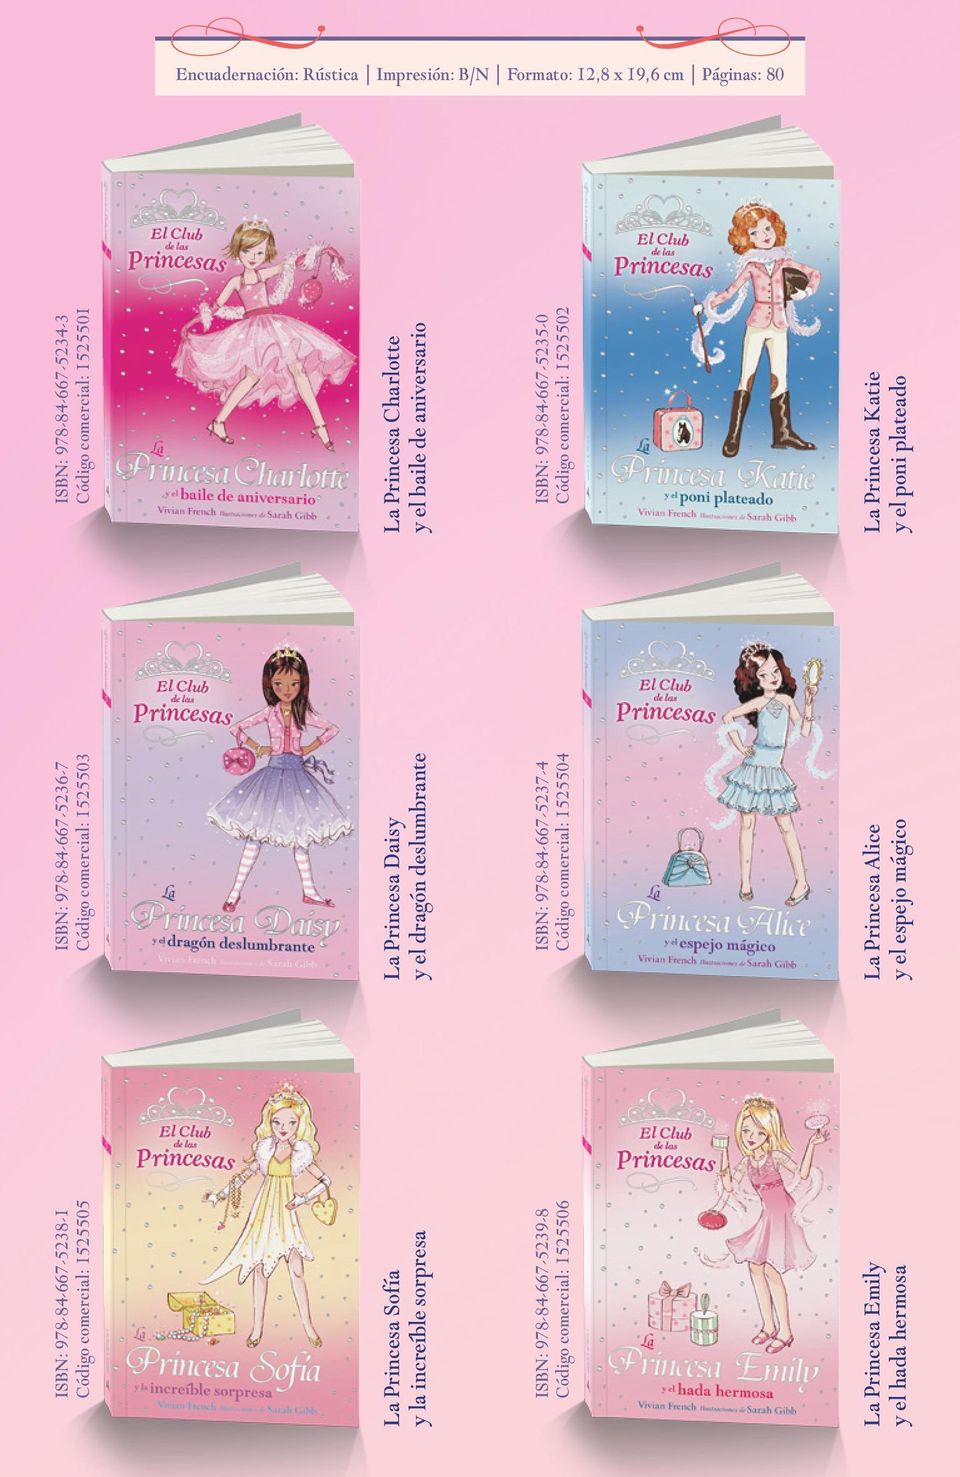 La Princesa Daisy y el dragón deslumbrante ISBN: 978-84-667-5237-4 Código comercial: 1525504 La Princesa Alice y el espejo mágico ISBN: 978-84-667-5234-3